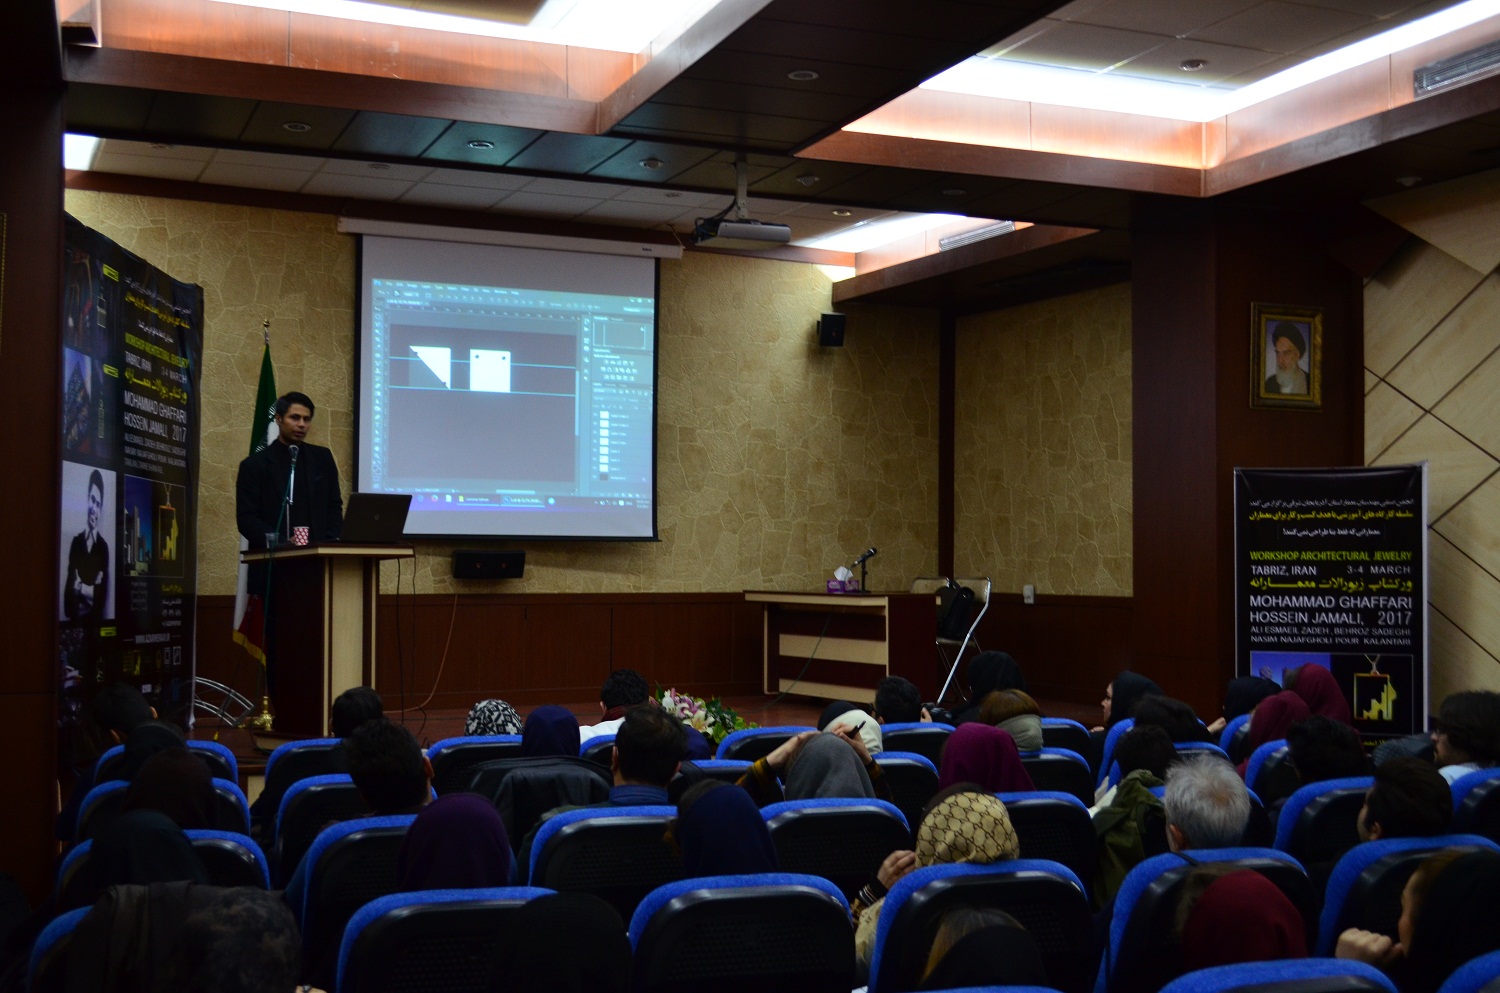 برگزاری گارگاه و همایش اموزشی طراحی طلا و زیورالات در تبریز+تصاویر